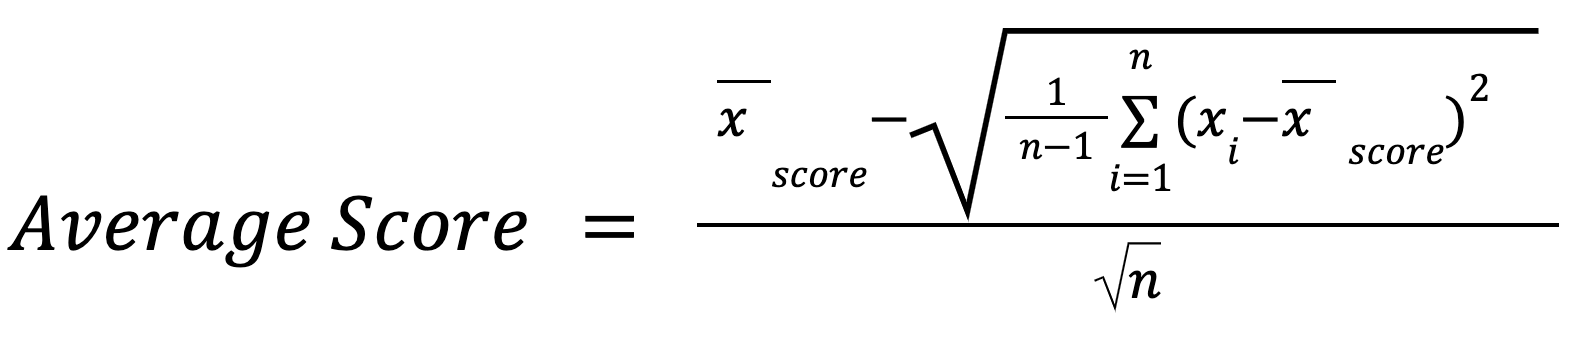 Average score calculation